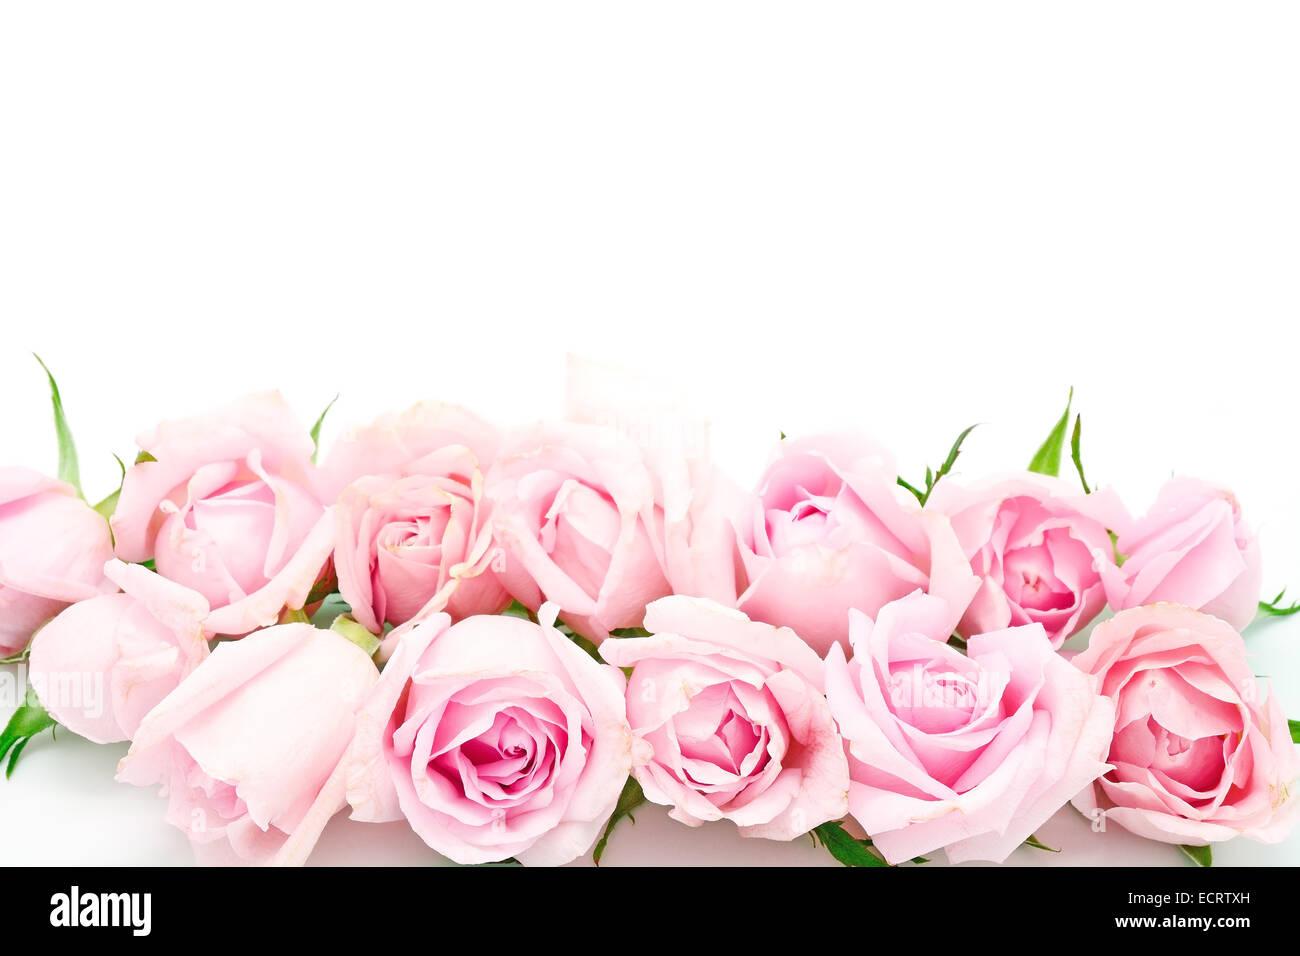 Belle rose rose isolé sur fond blanc Banque D'Images